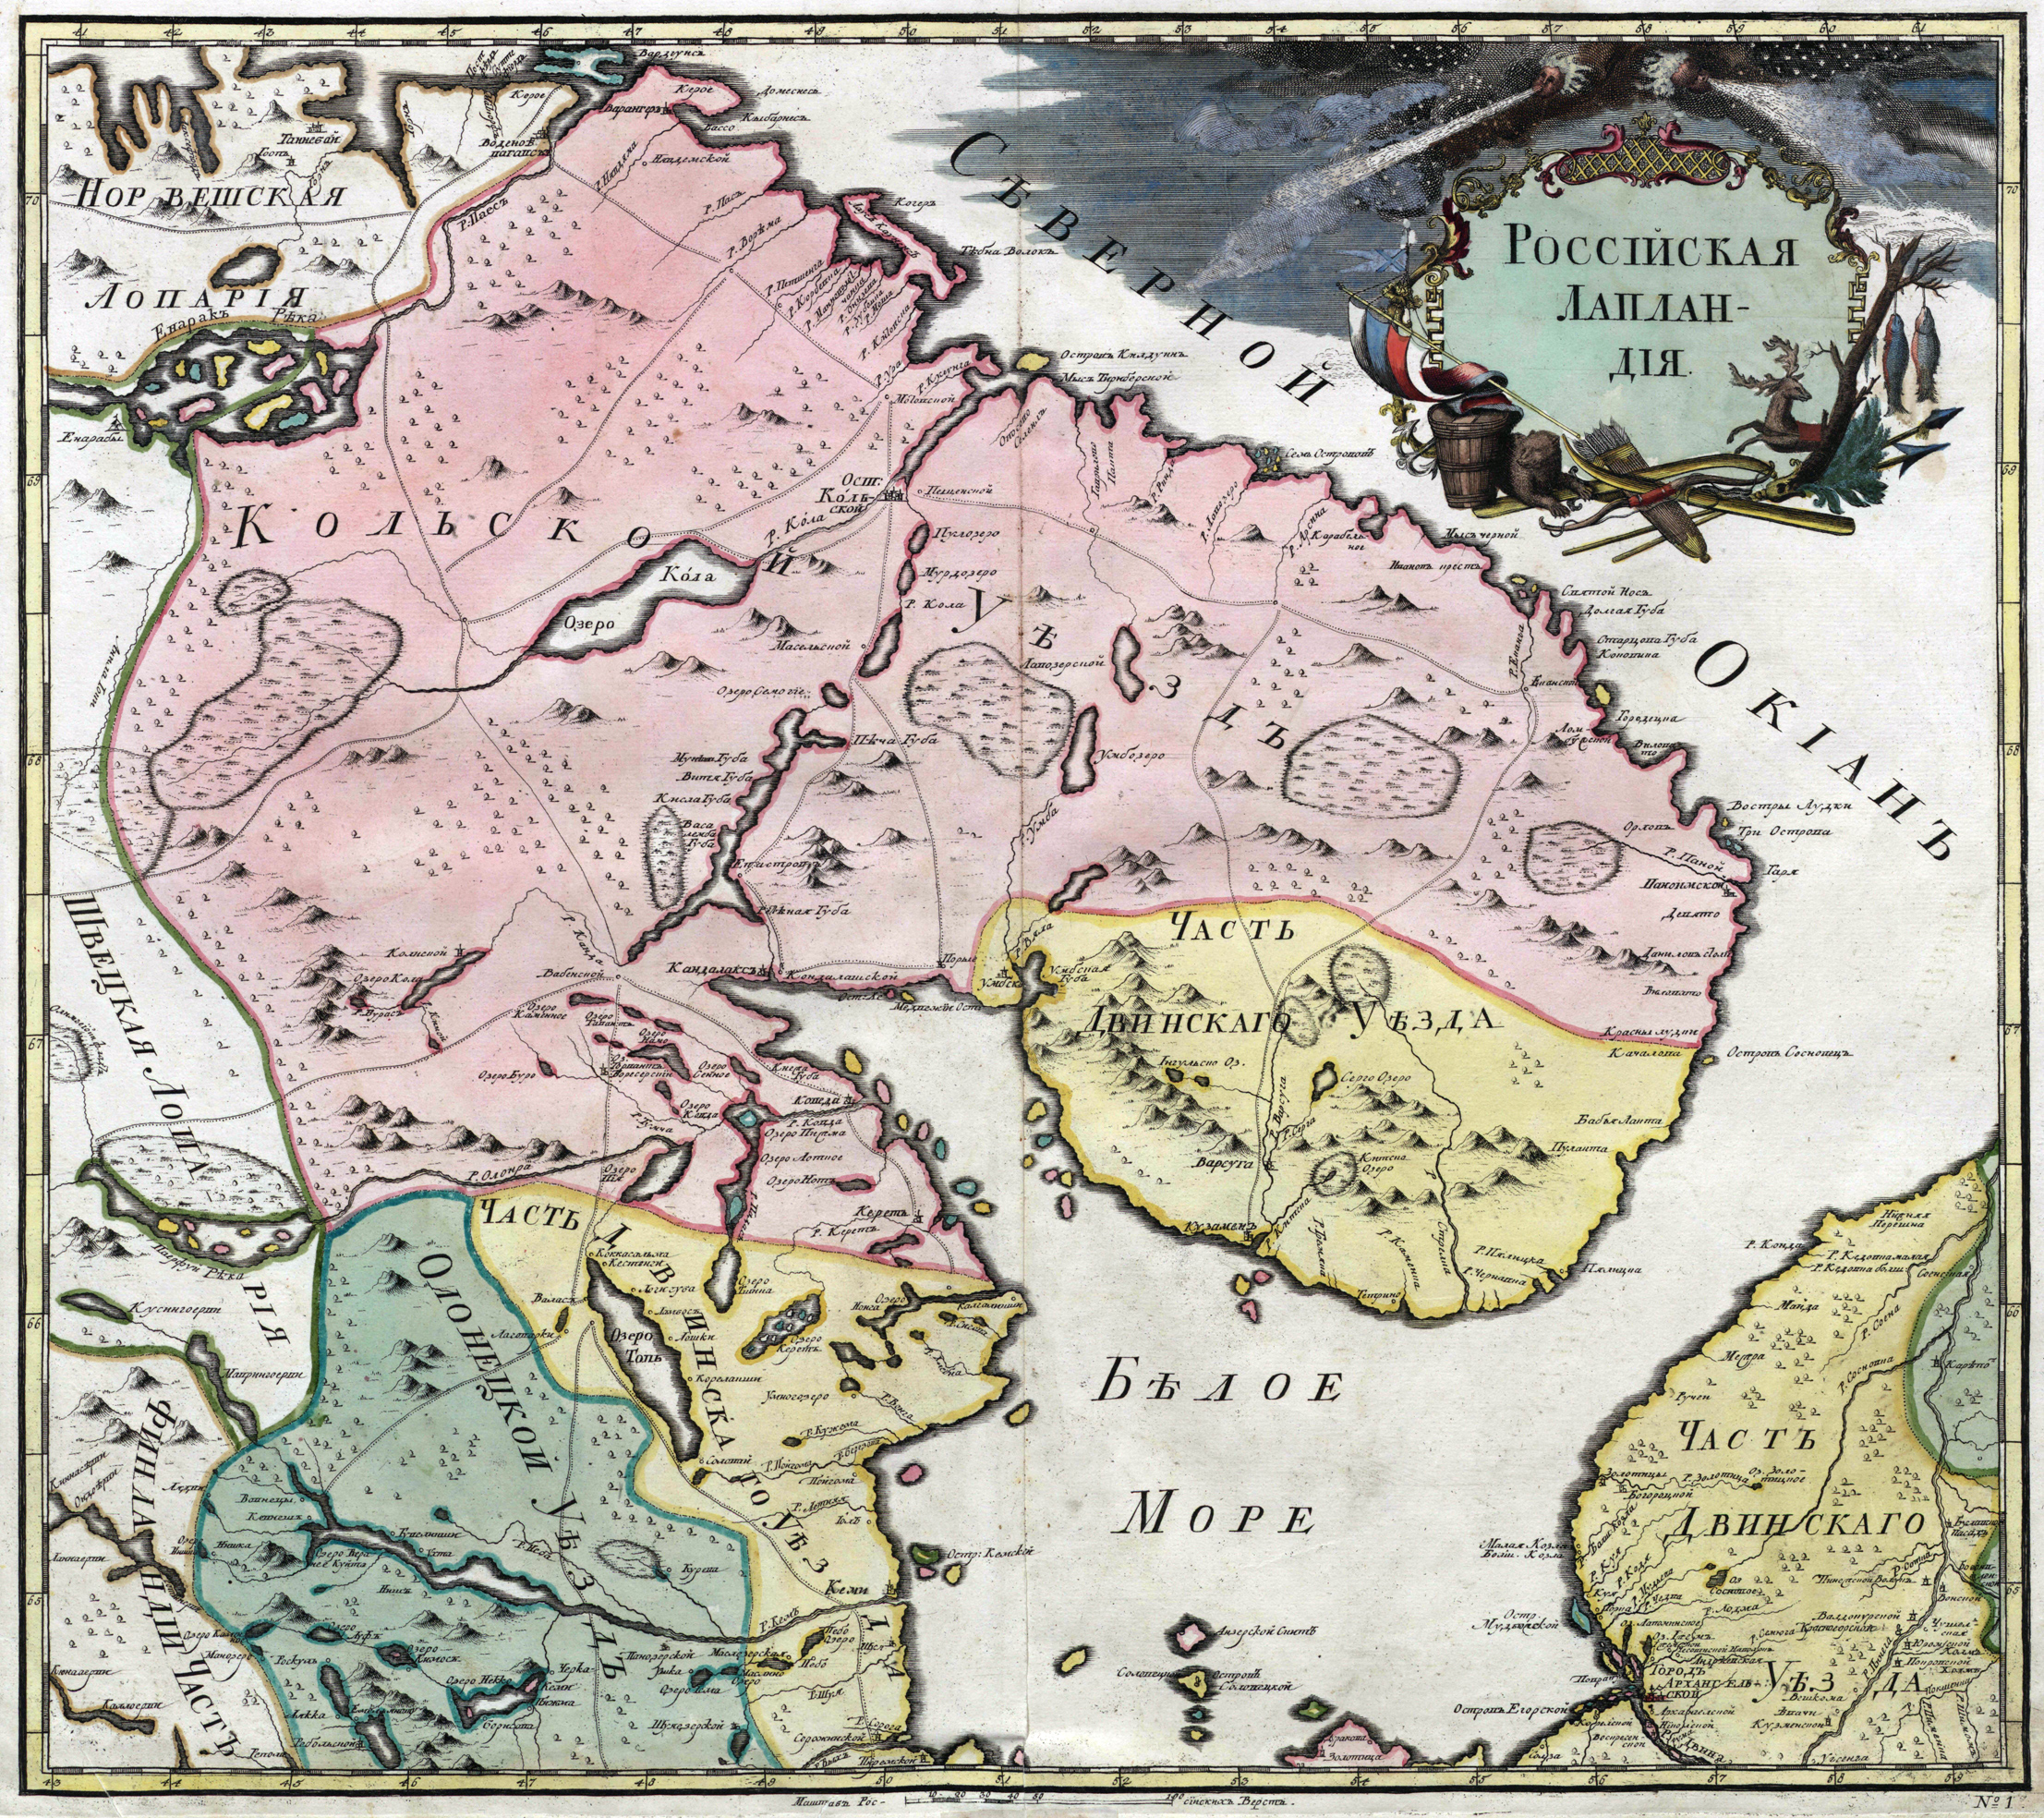 1745 год. Российская Лапландия